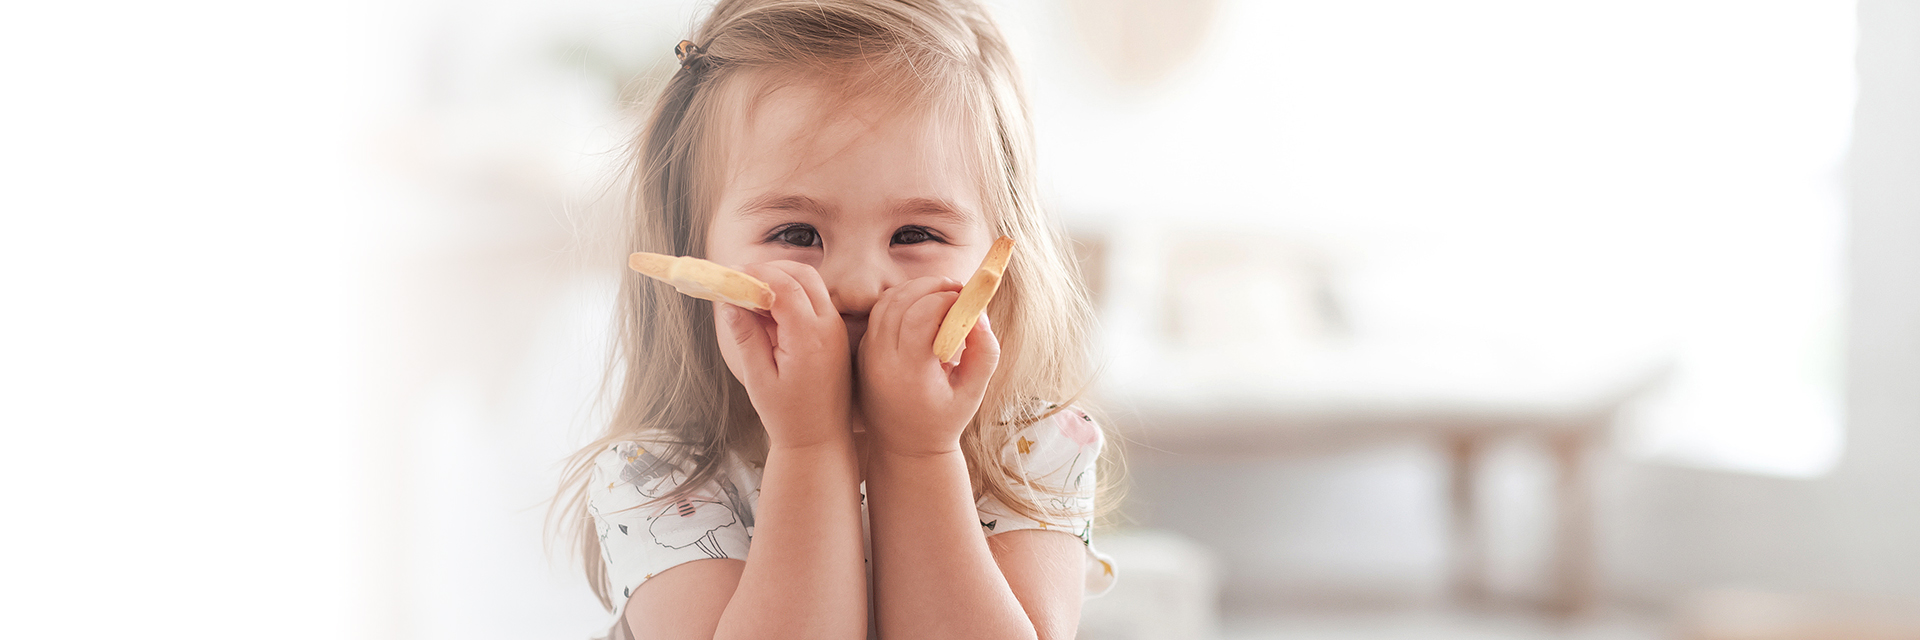 Little girl smiling holding finger foods